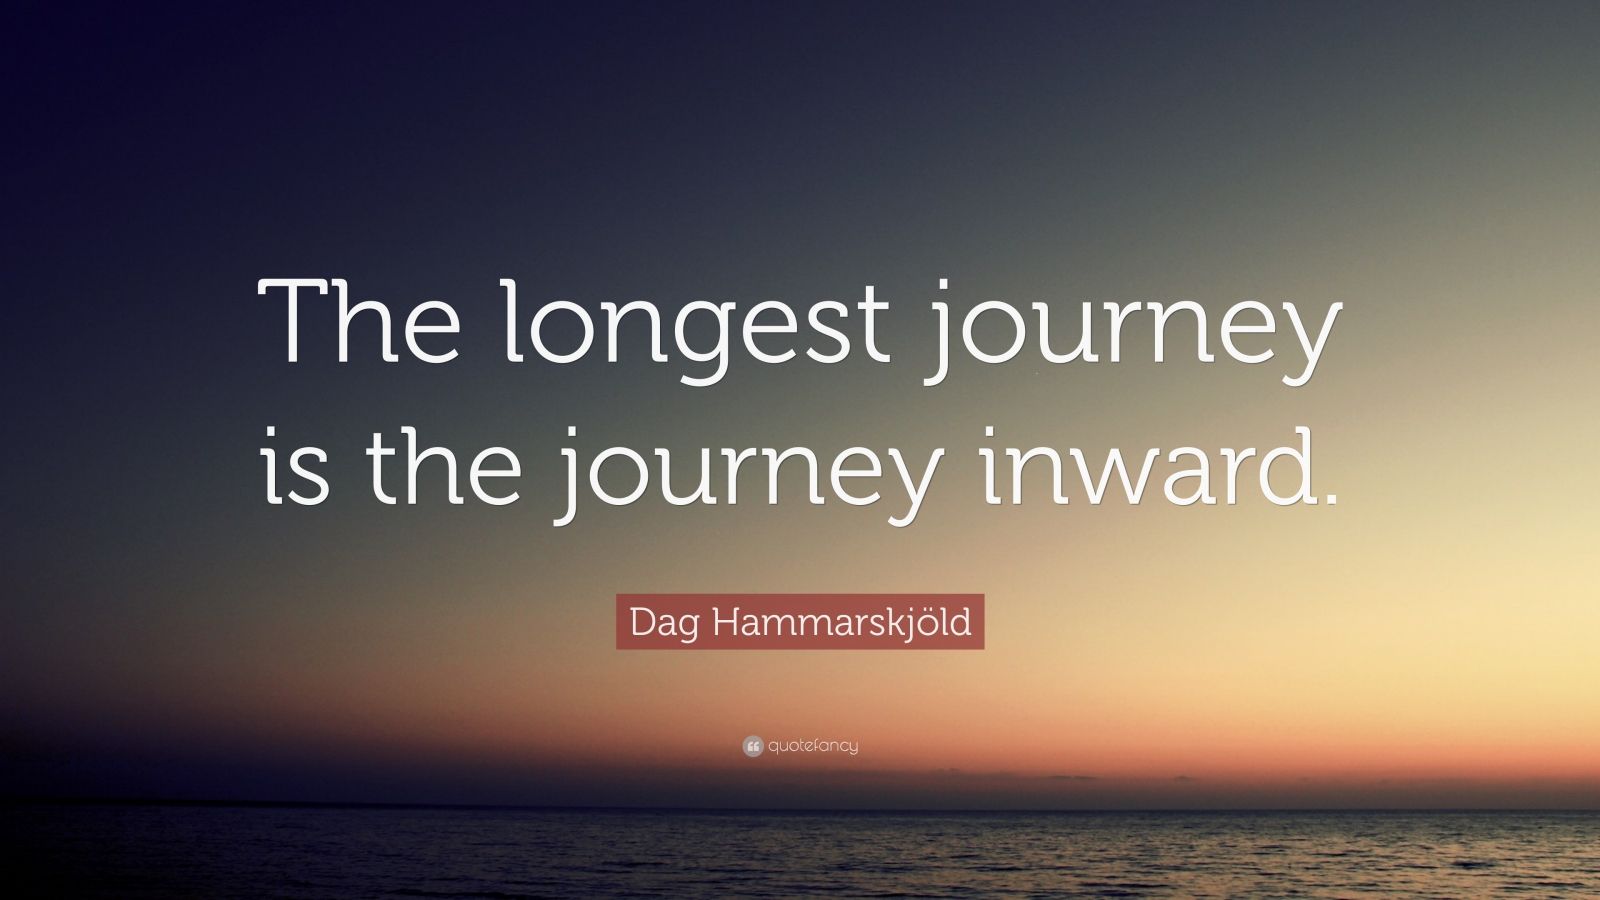 Dag Hammarskjöld Quote: “The longest journey is the journey inward.” (9 ...